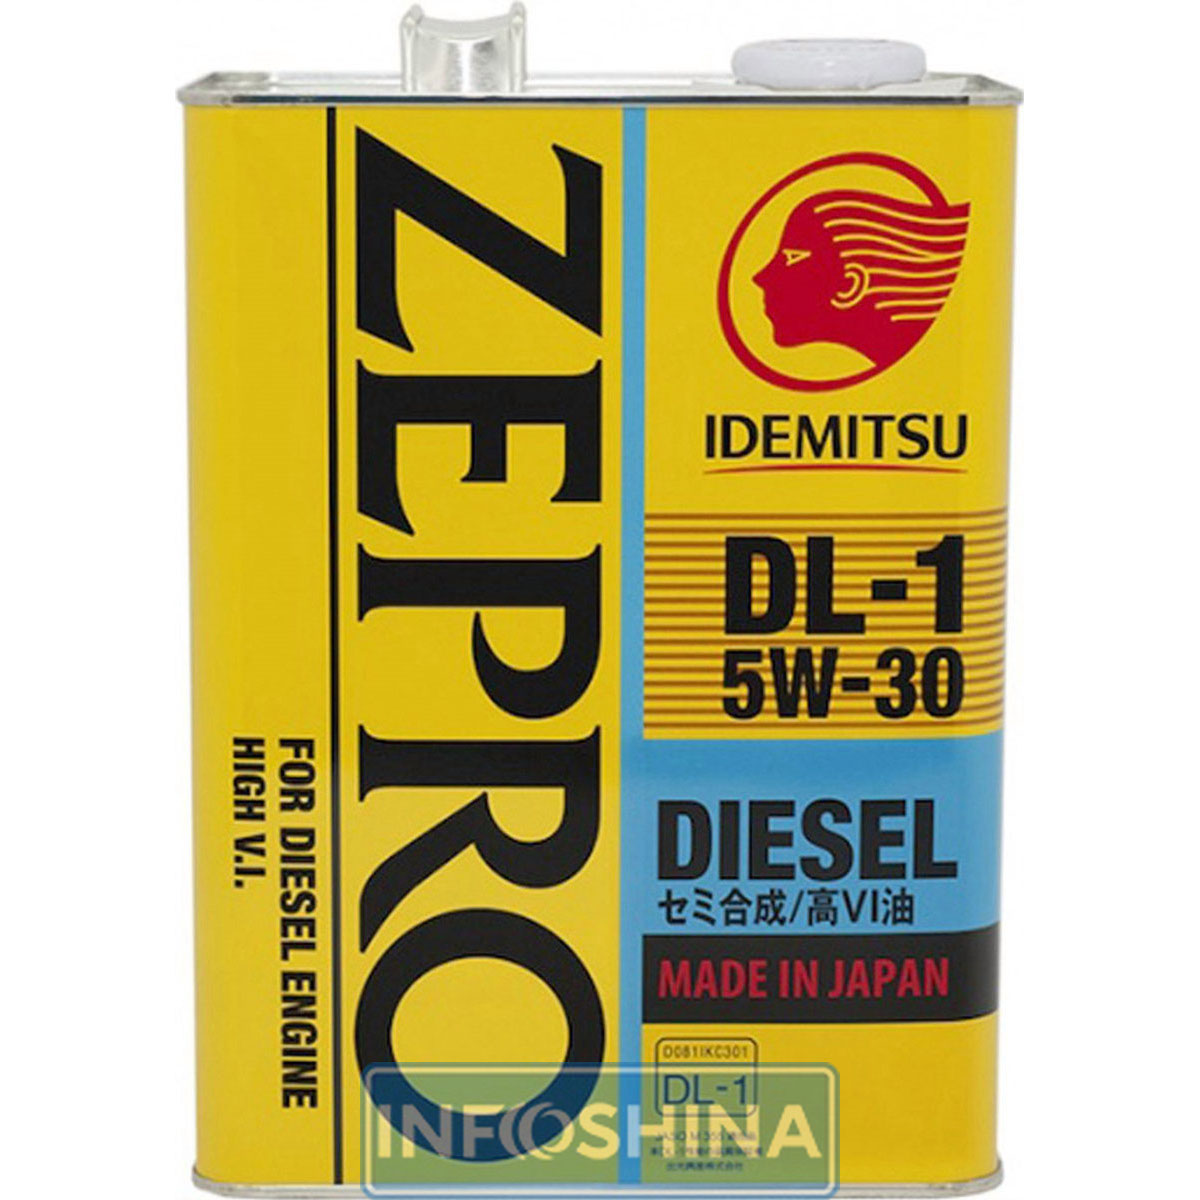 IDEMITSU Zepro Diesel DL-1 5W-30